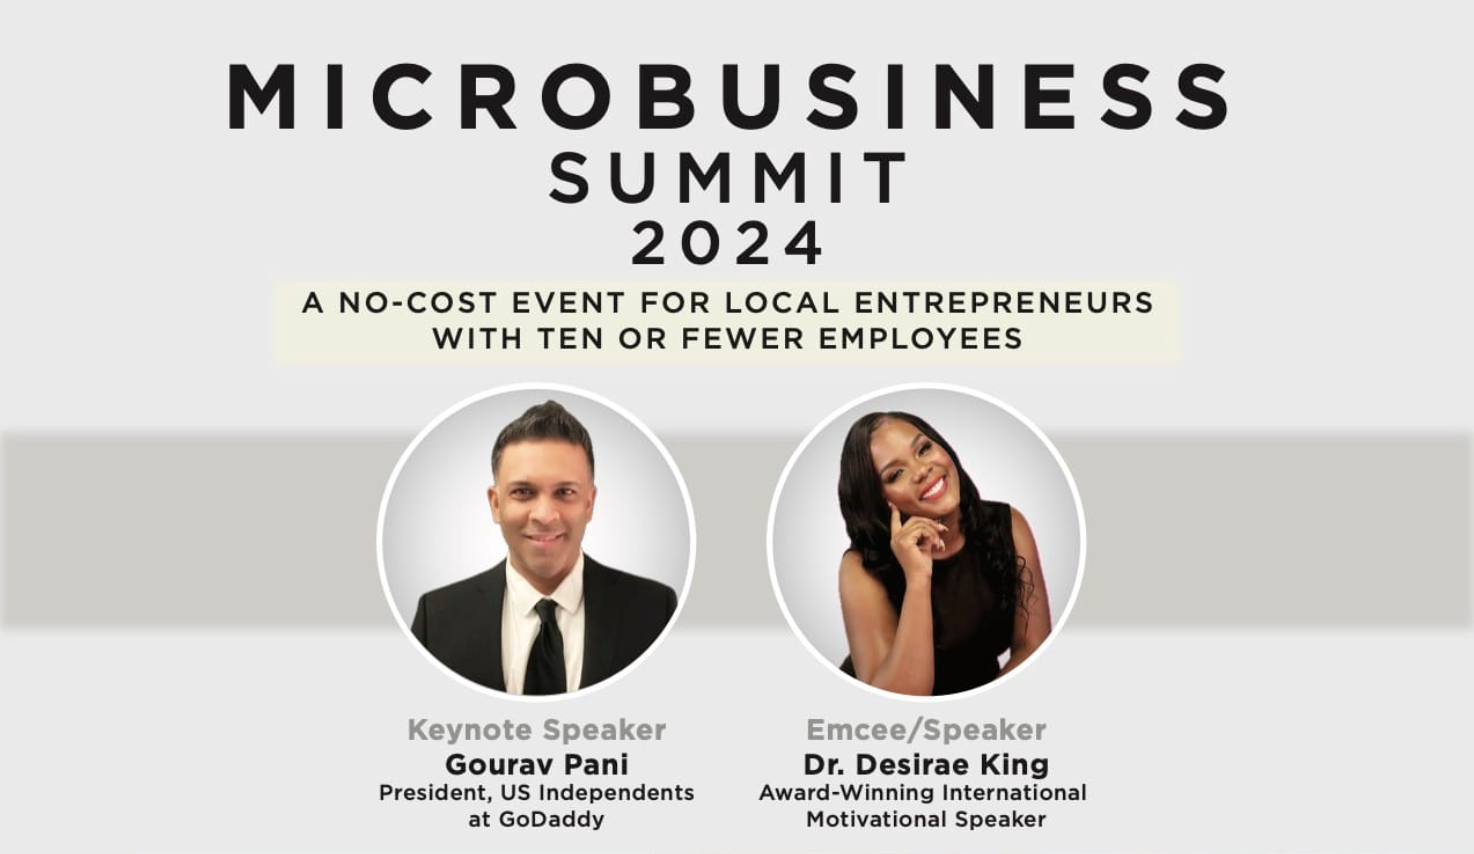 Free Microbusiness Summit on February 24 at Las Vegas City Hall